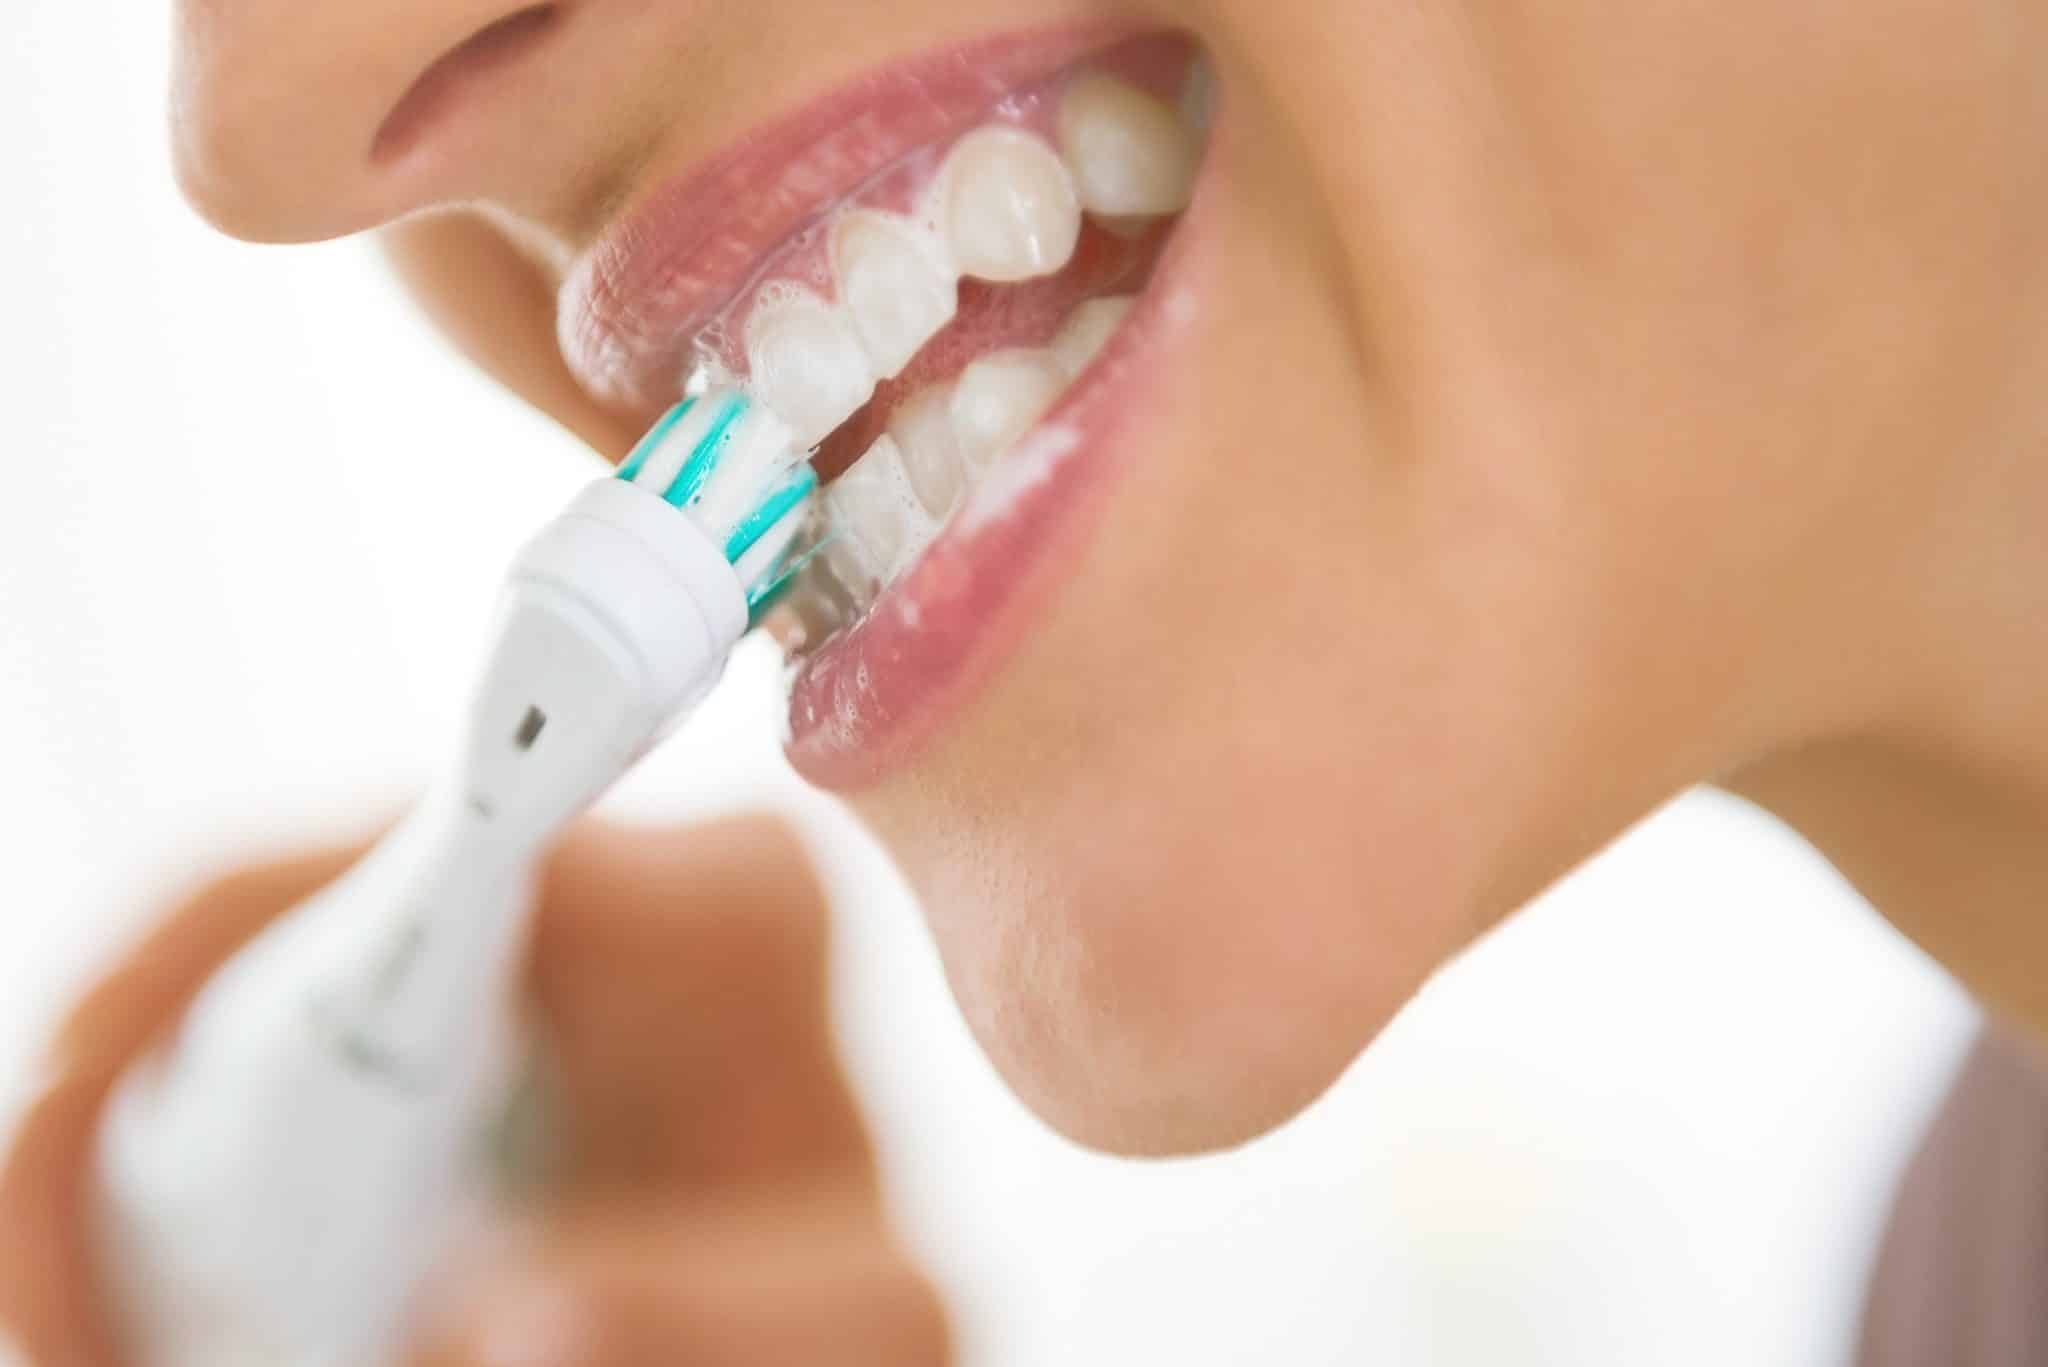 higiena jamy ustnej przy pomocy szczoteczki elektrycznej